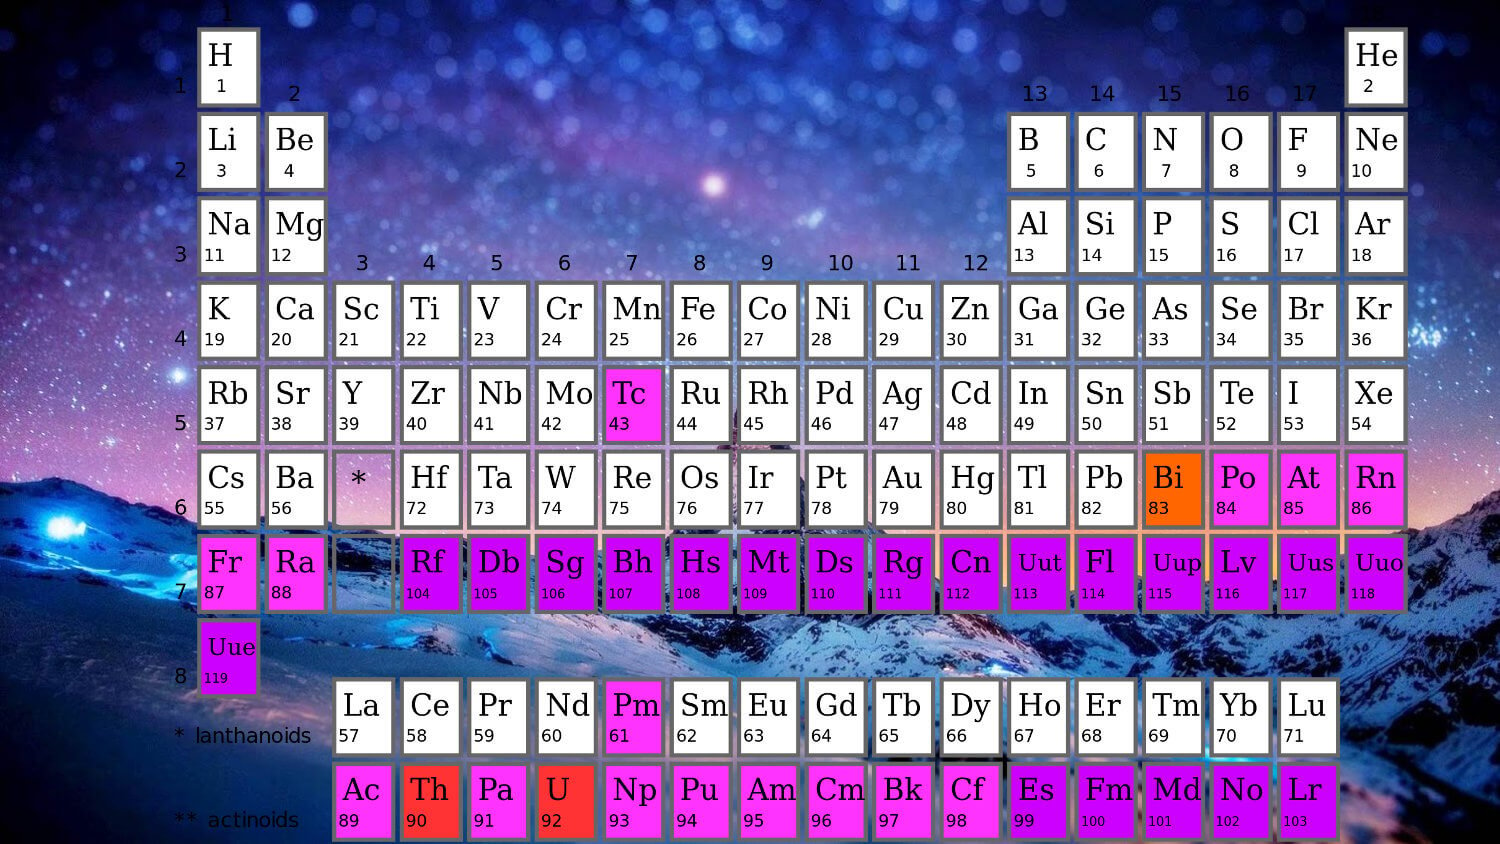 Периодическая таблица химических элементов